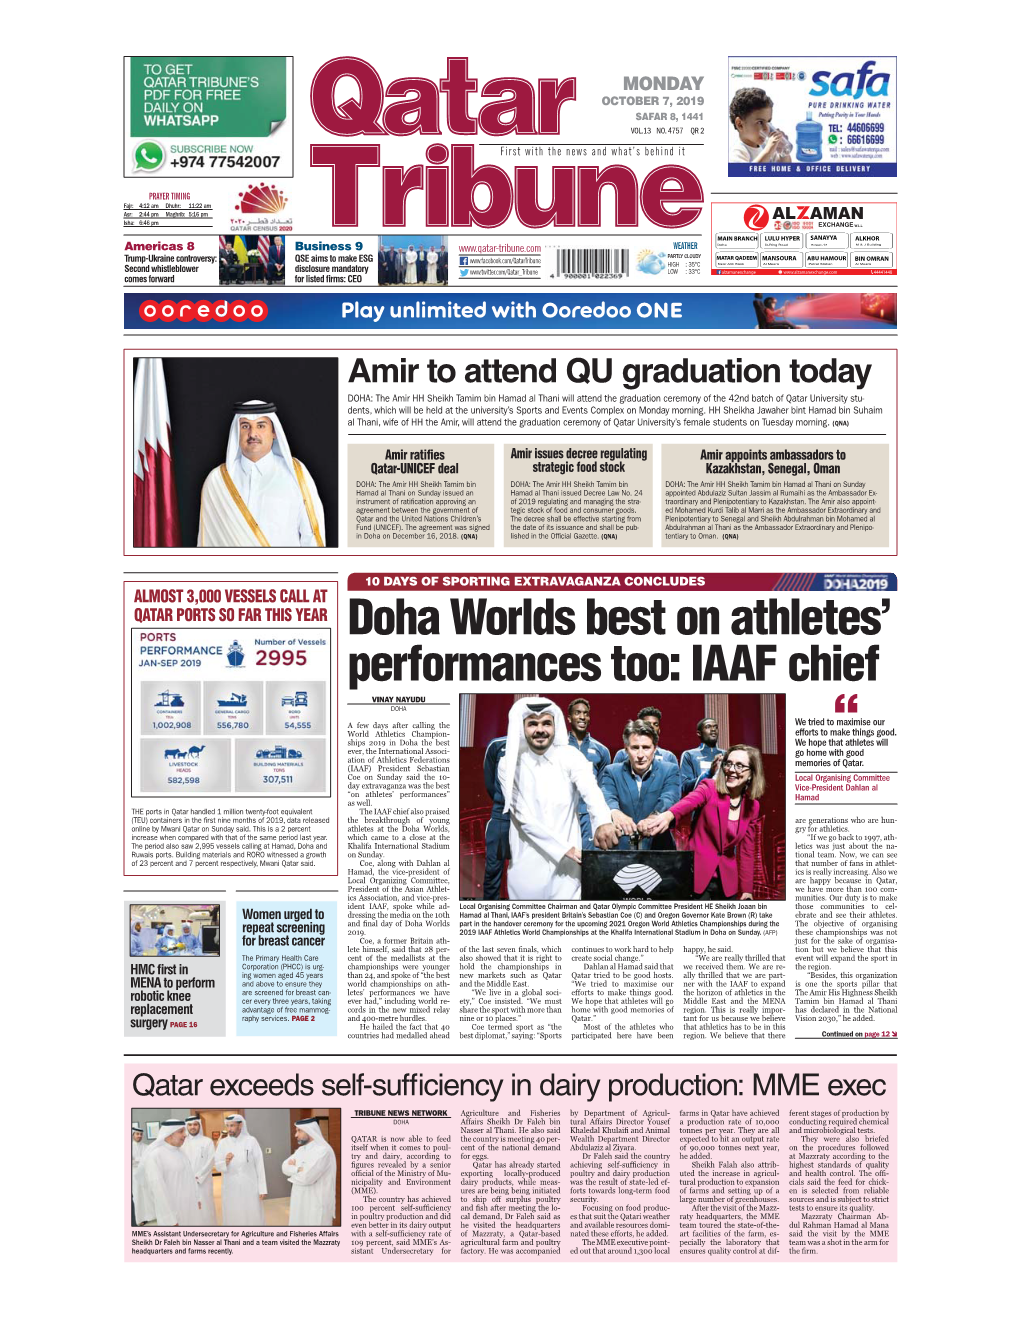 Doha Worlds Best on Athletes' Performances Too: IAAF Chief